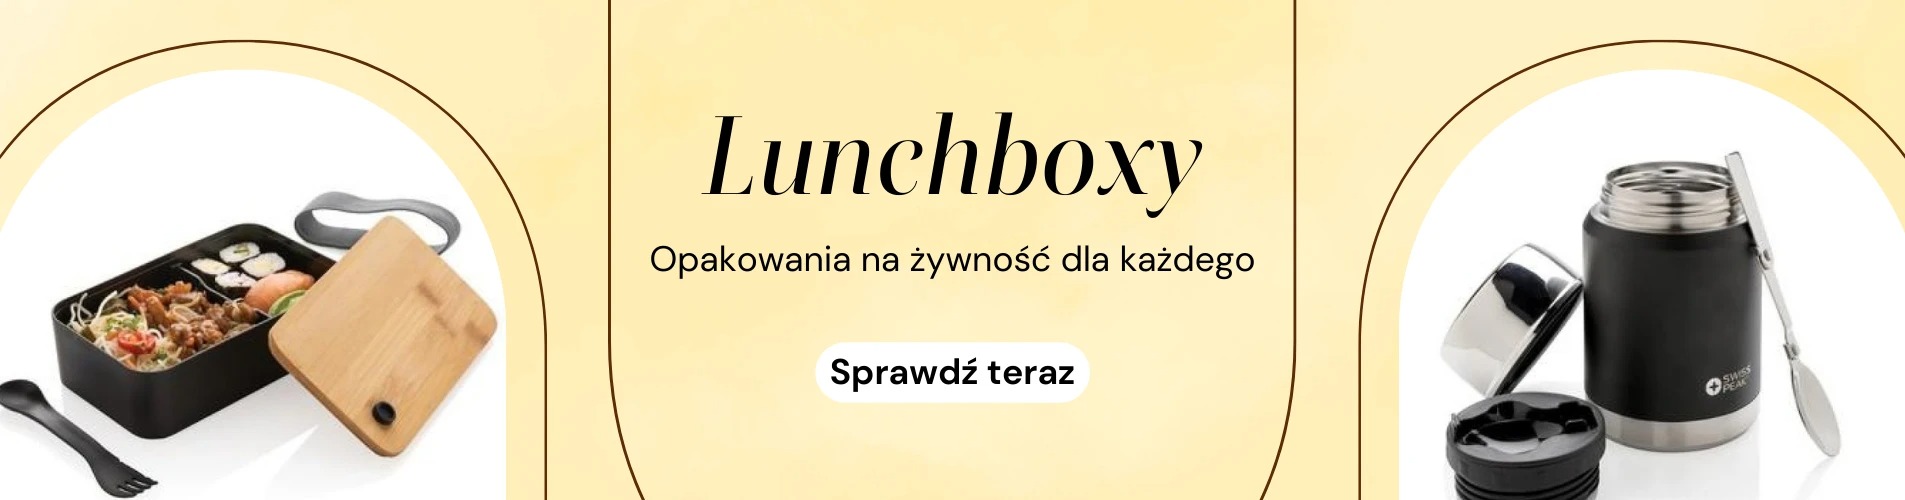 Lunchboxy reklamowe